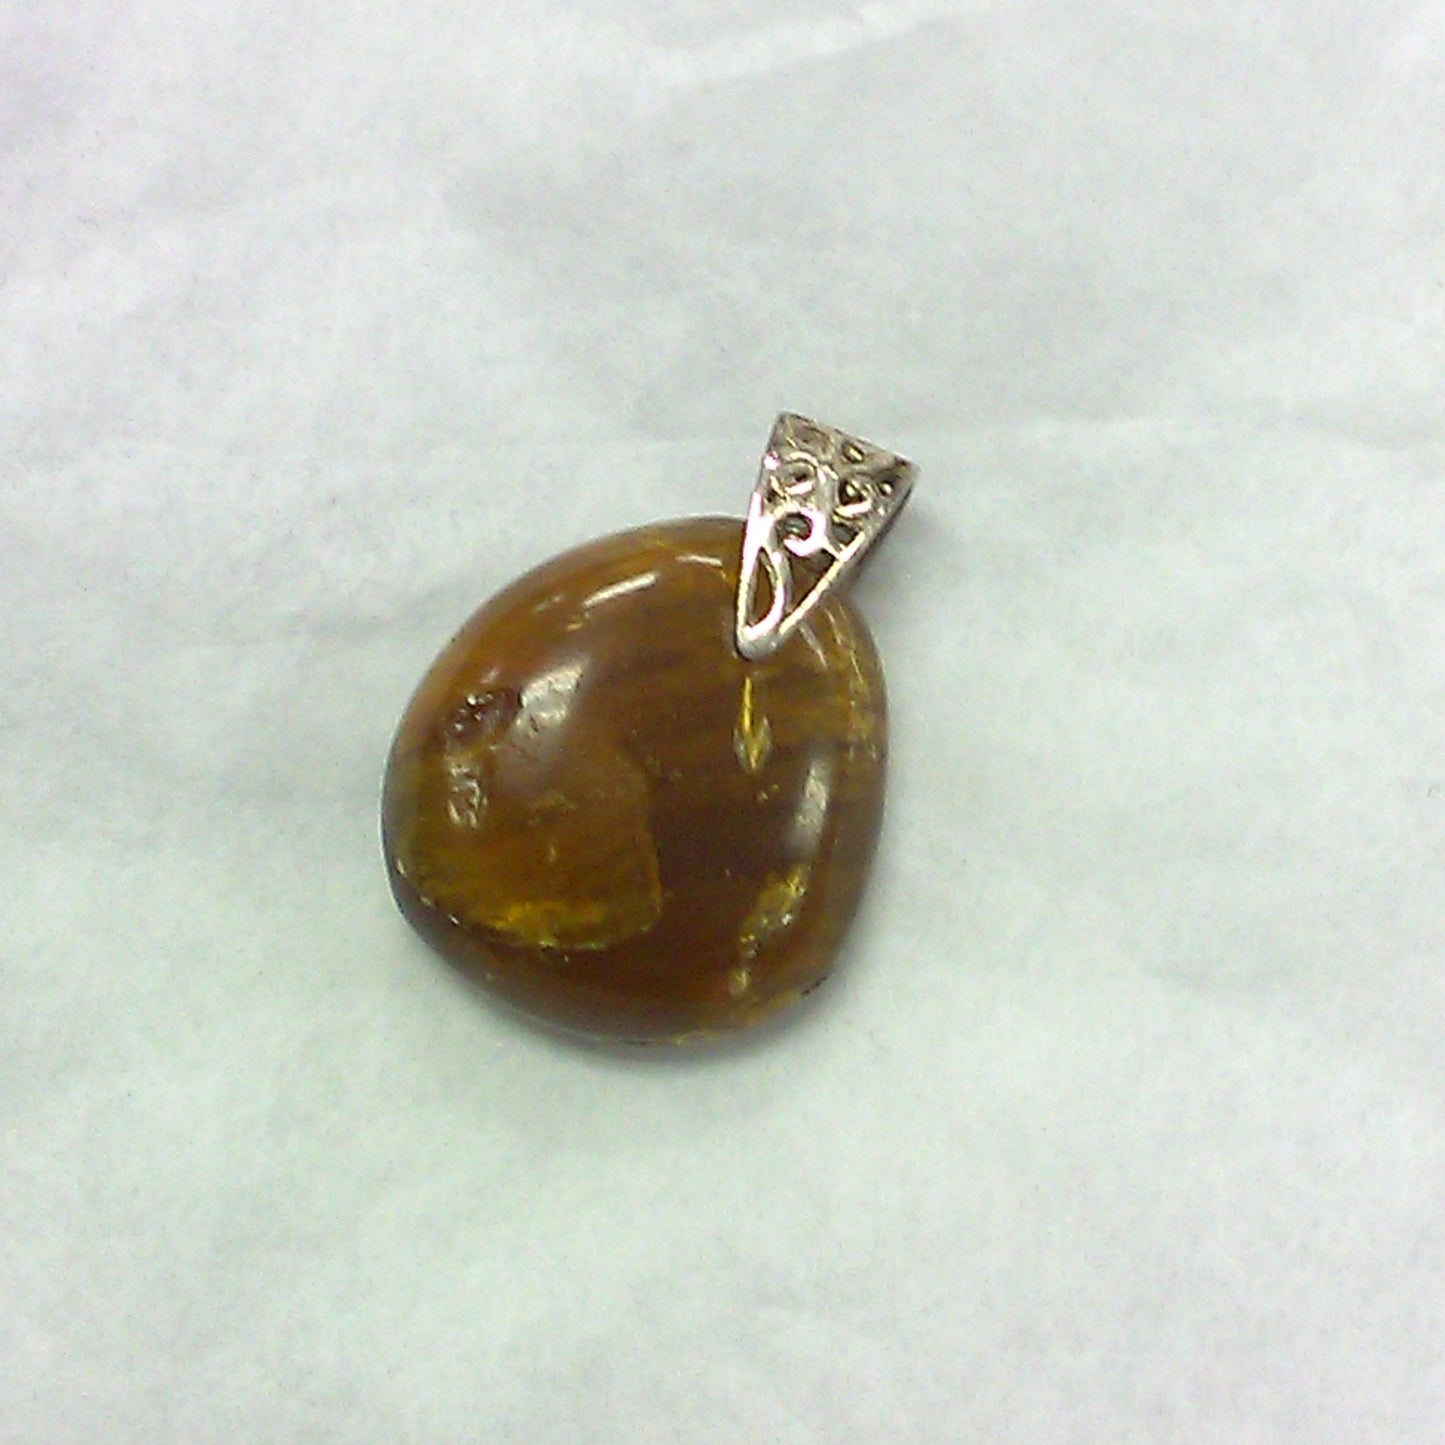 Polished Amber Pendant